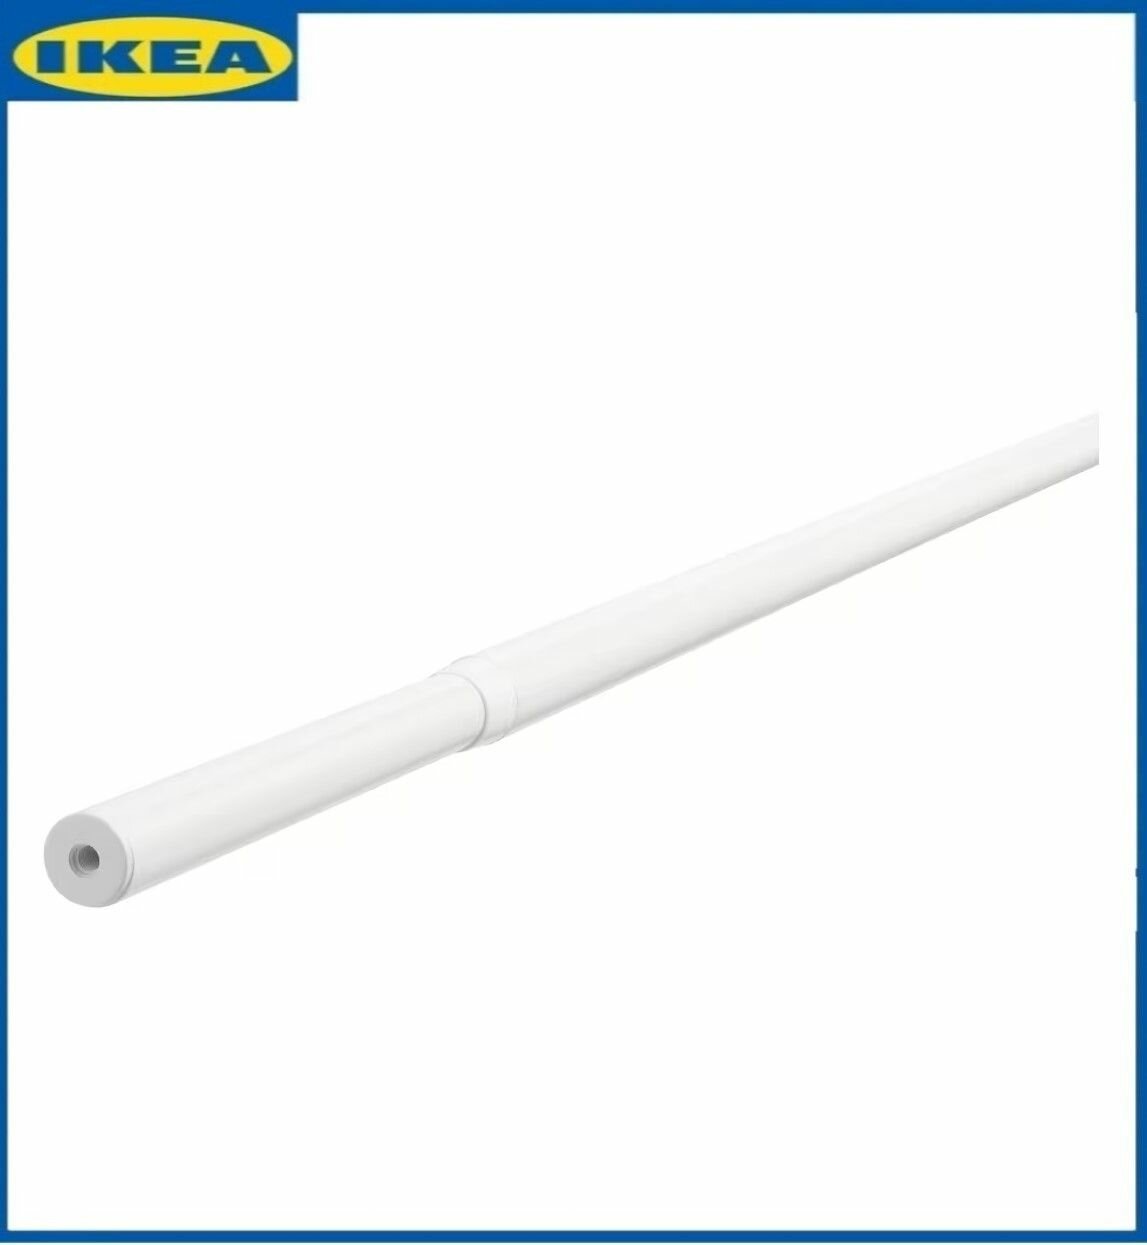 Карниз гардинный IKEA RACKA (без креплений), 70-120 см , белый. Икеа рэкка